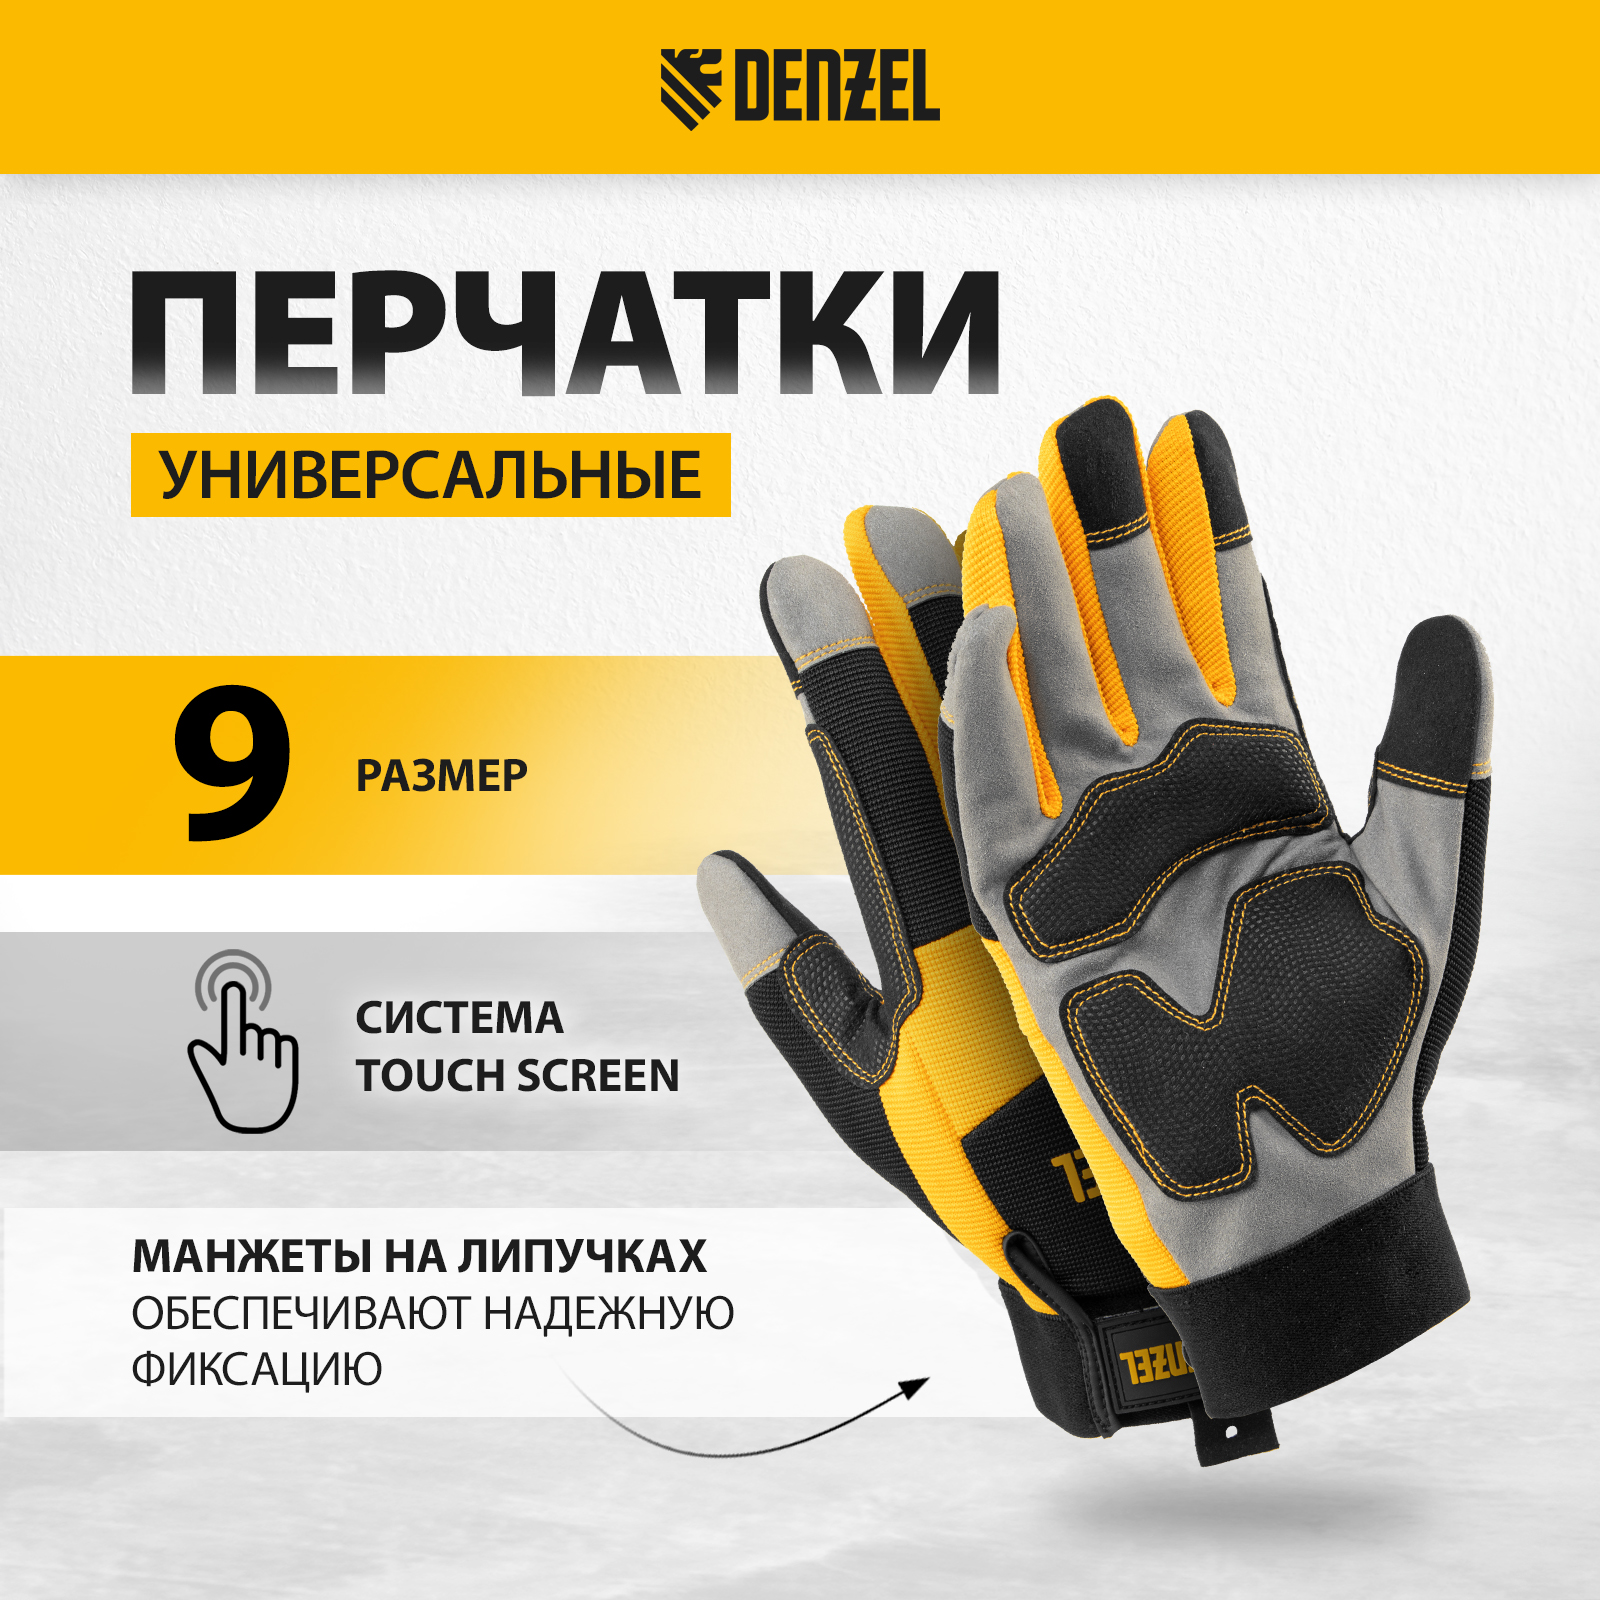 Перчатки универсальные DENZEL усиленные размер 9 67990 универсальные хлопчатобумажные перчатки zolder